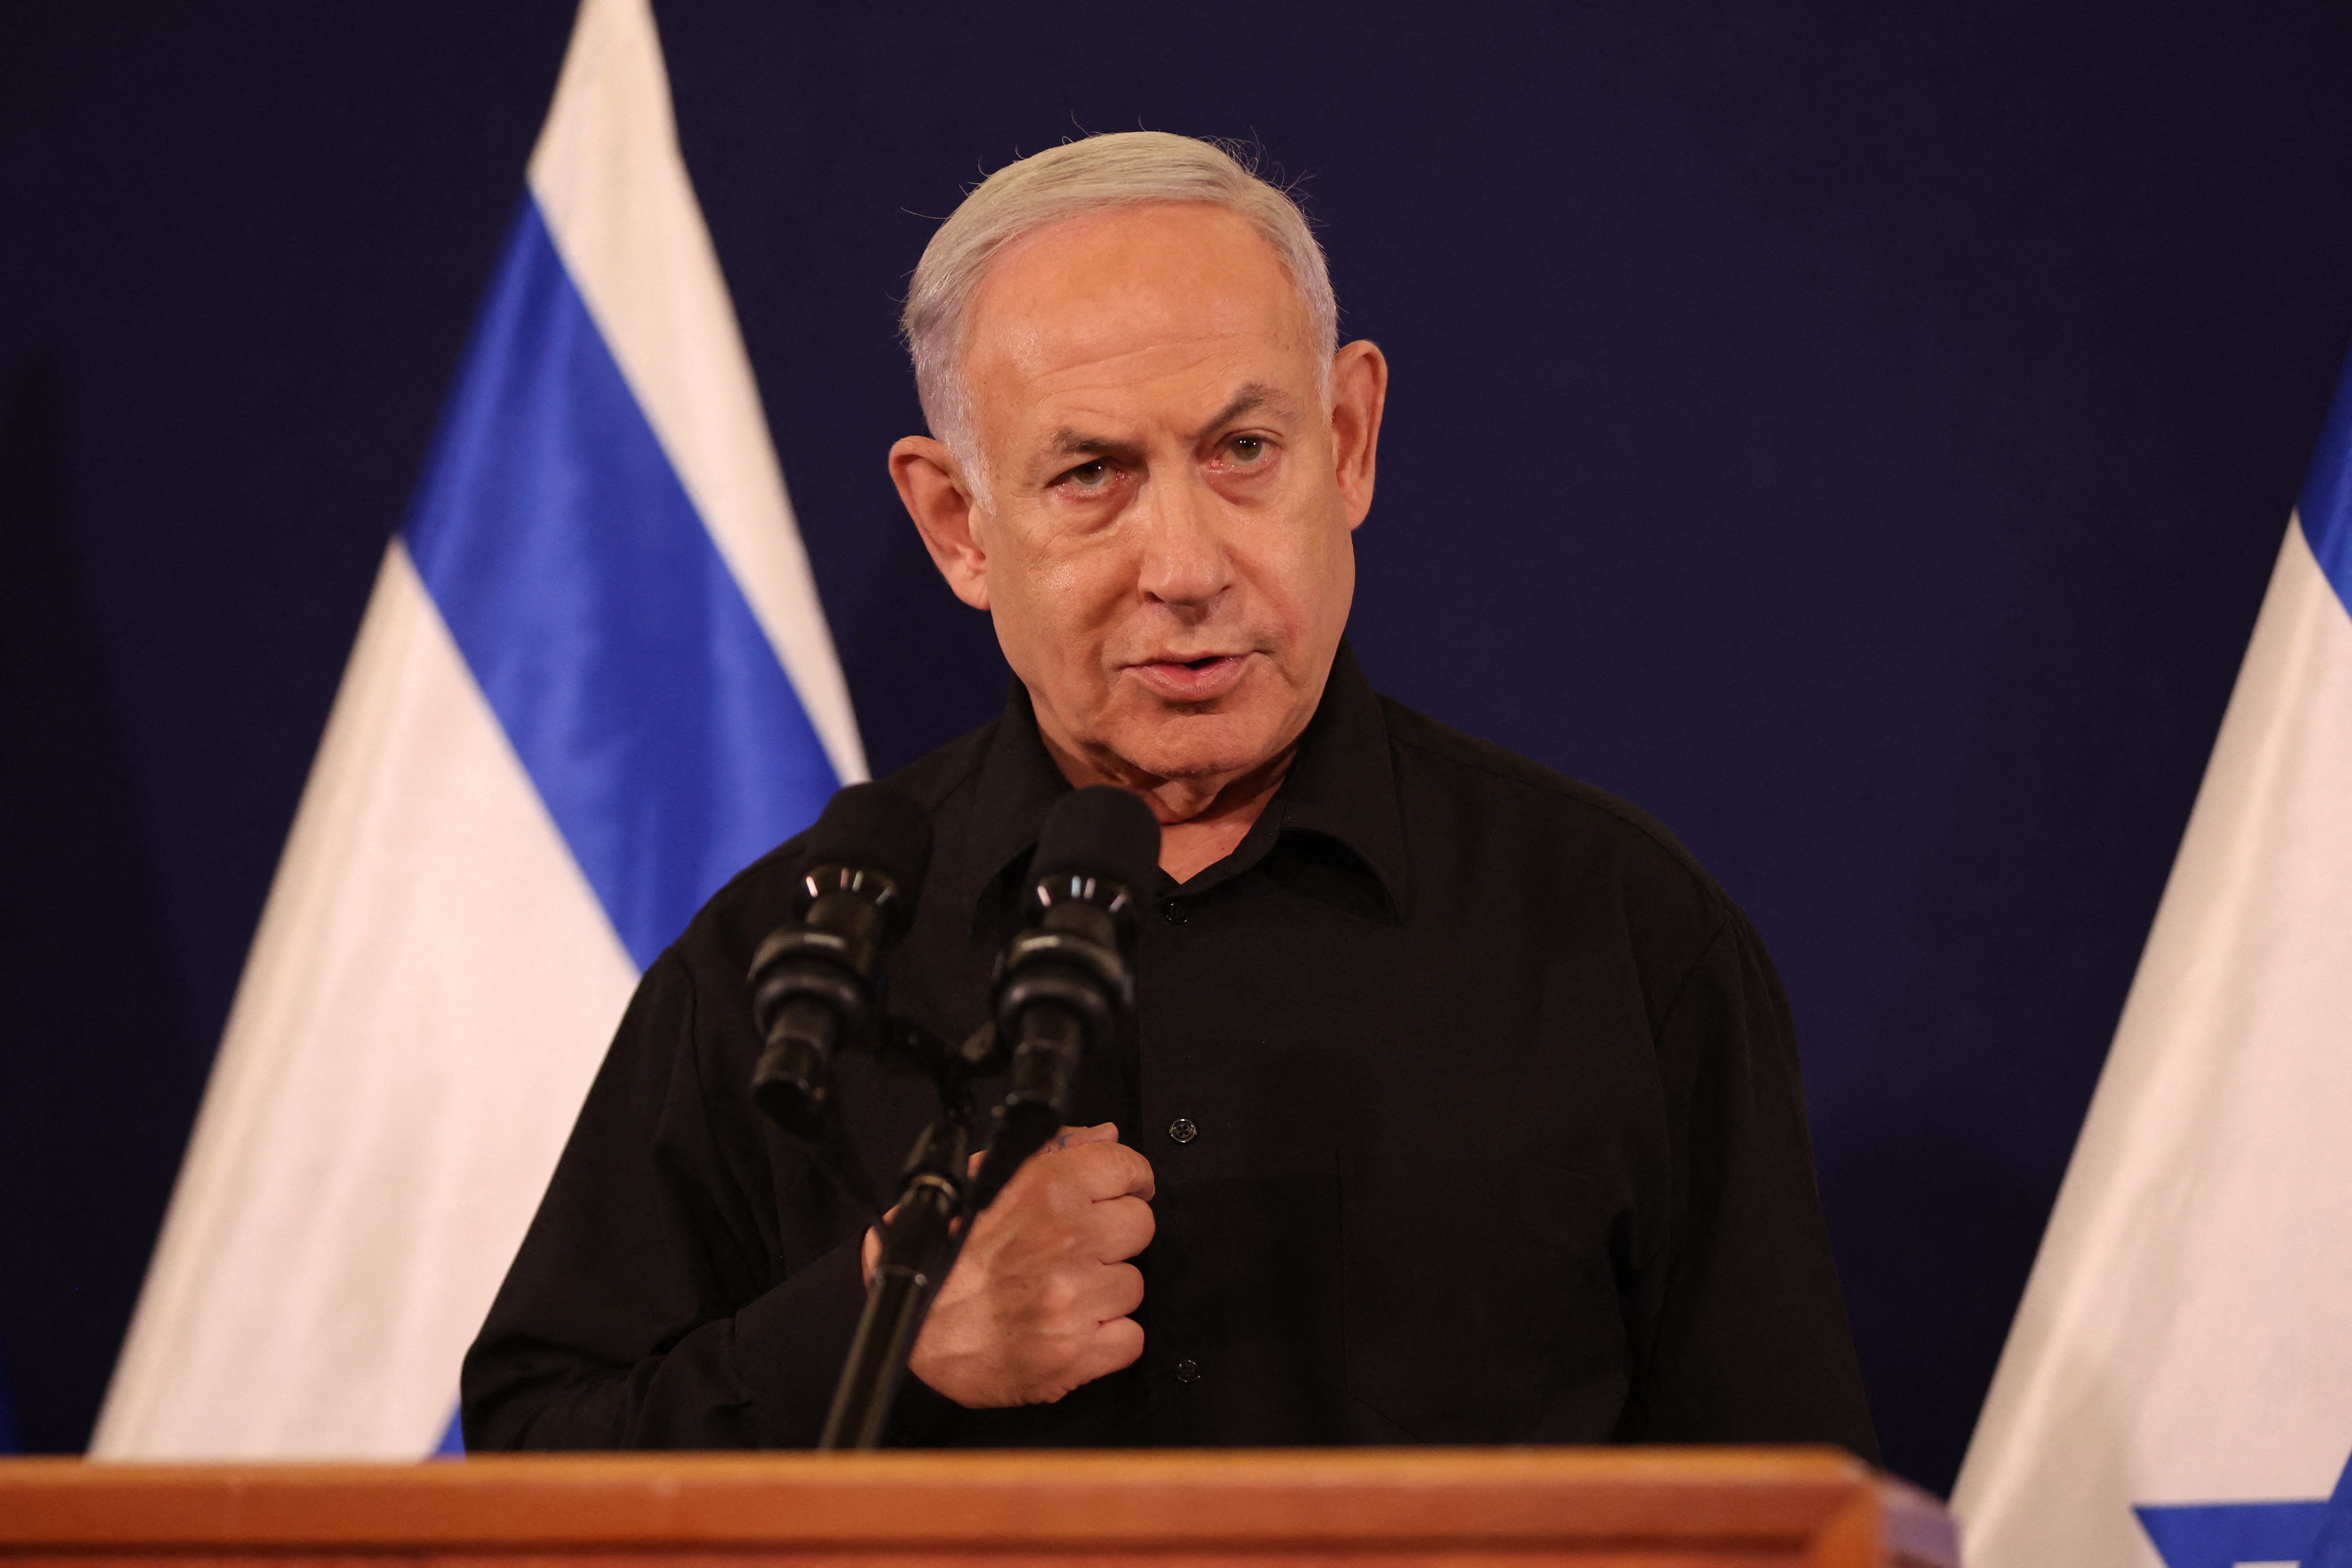 Krieg im Nahen Osten - Israelischer Ministerpräsident Netanjahu entschuldigt sich für Vorwürfe gegen Geheimdienst